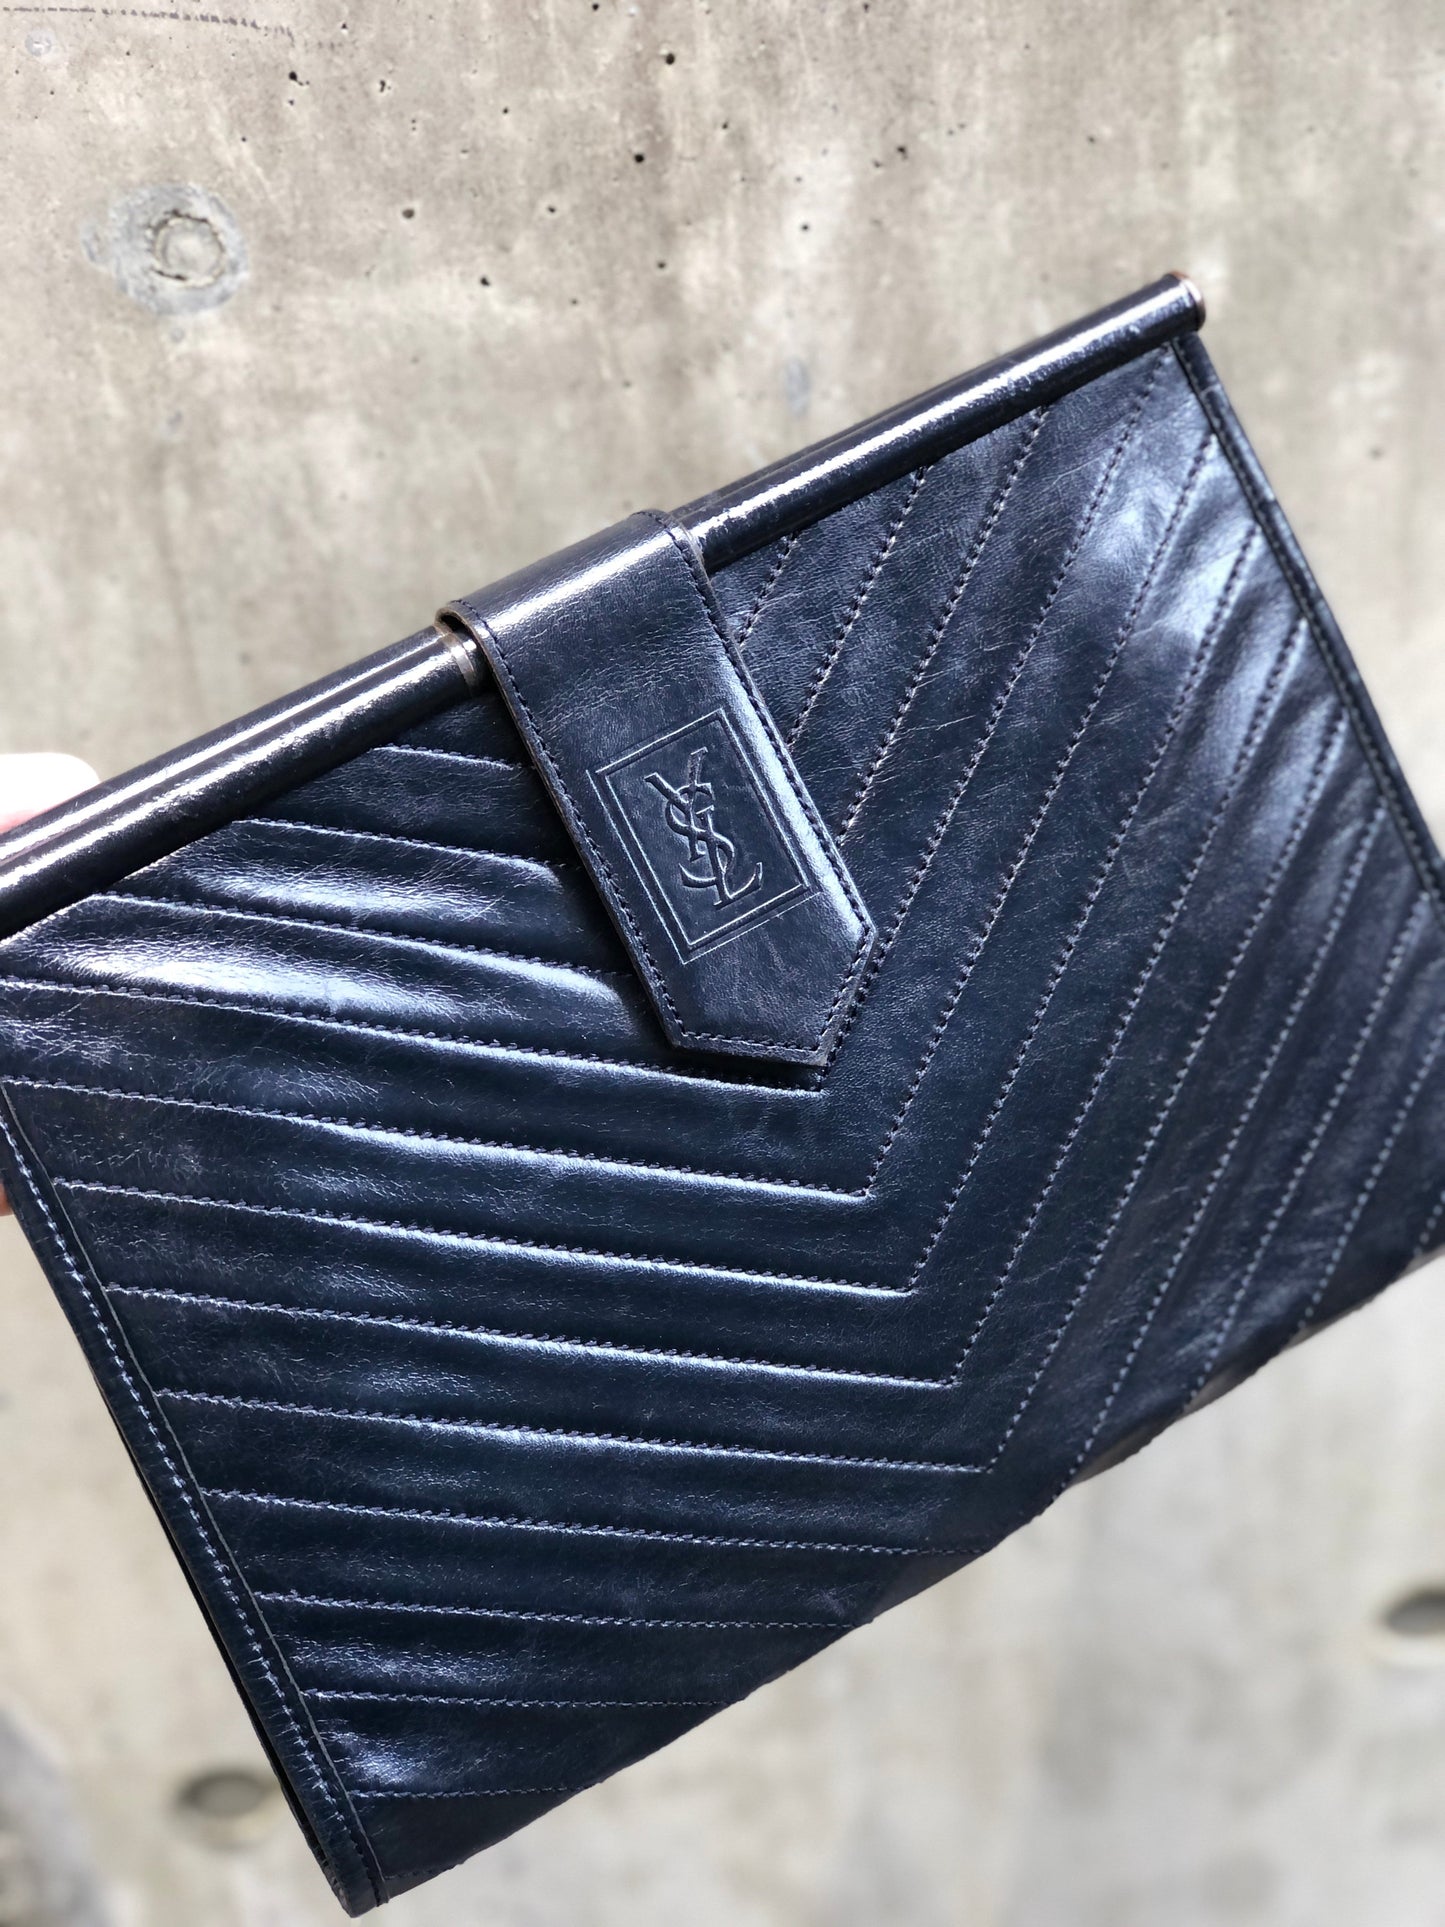 Yves Saint Laurent Vintage - Monogram Chevron Leather Clutch Bag